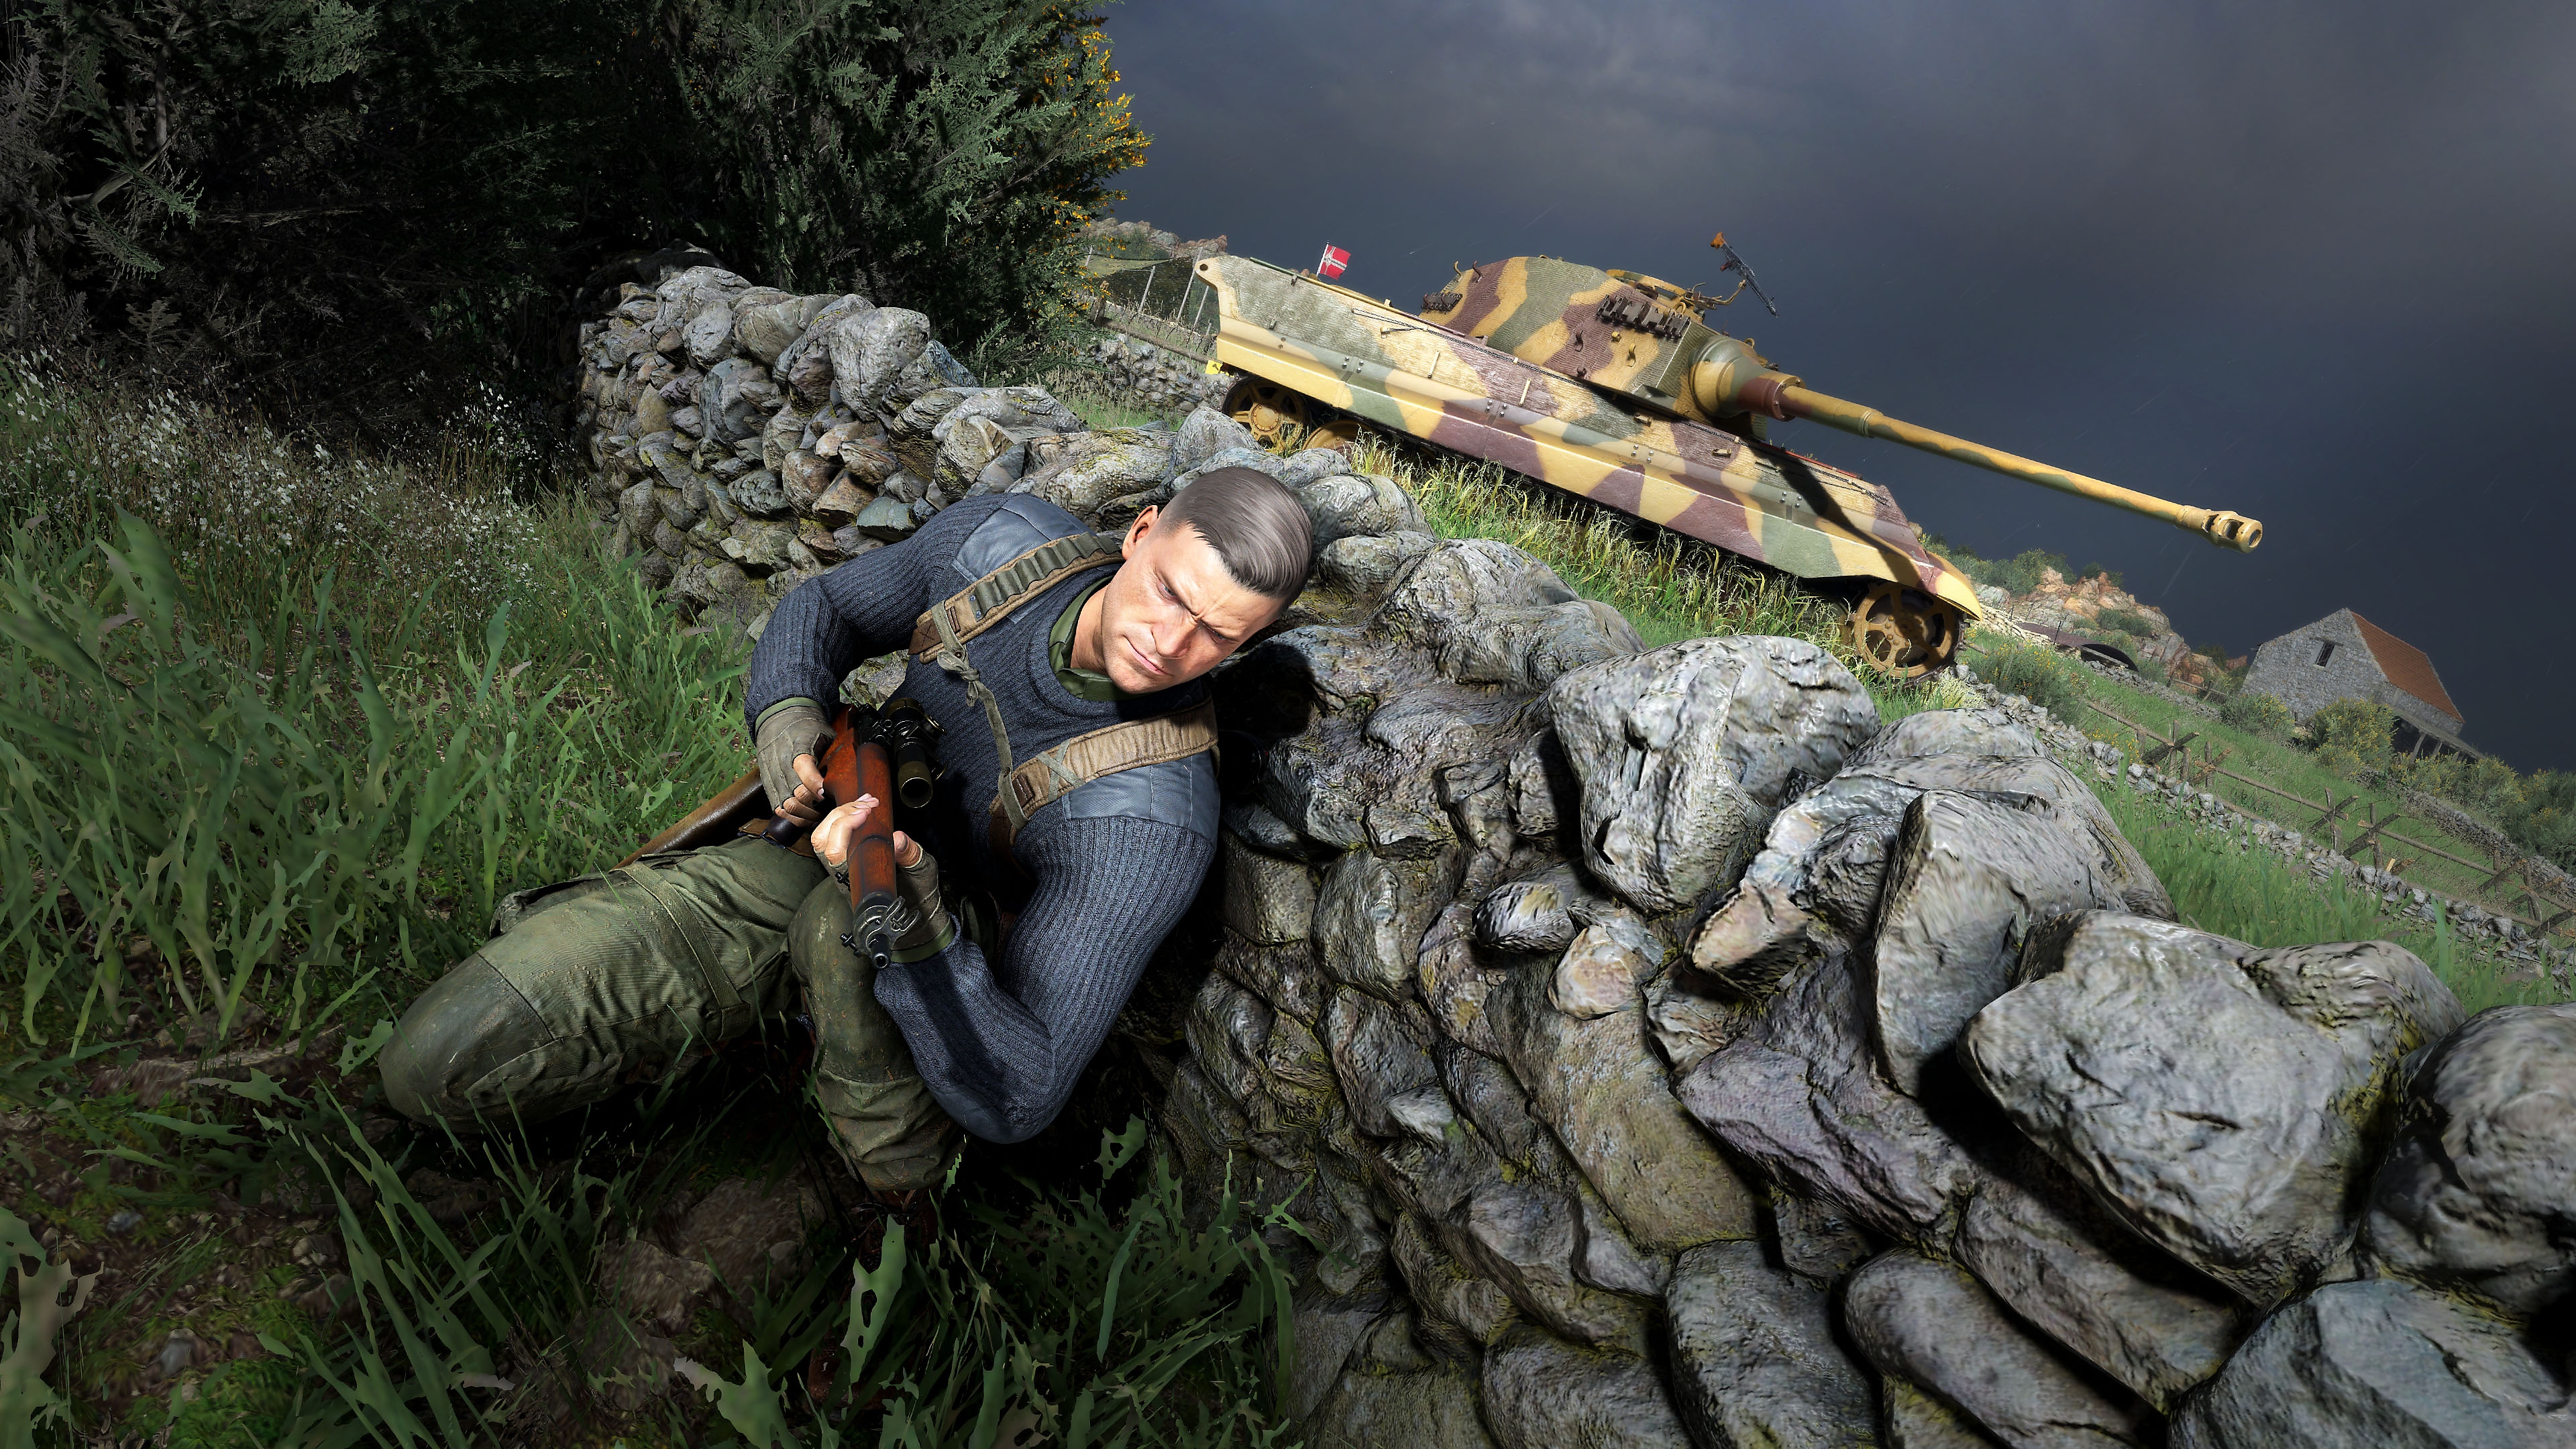 Sniper Elite 5 – kuvakaappaus jossa hahmo suojautuu seinän taakse